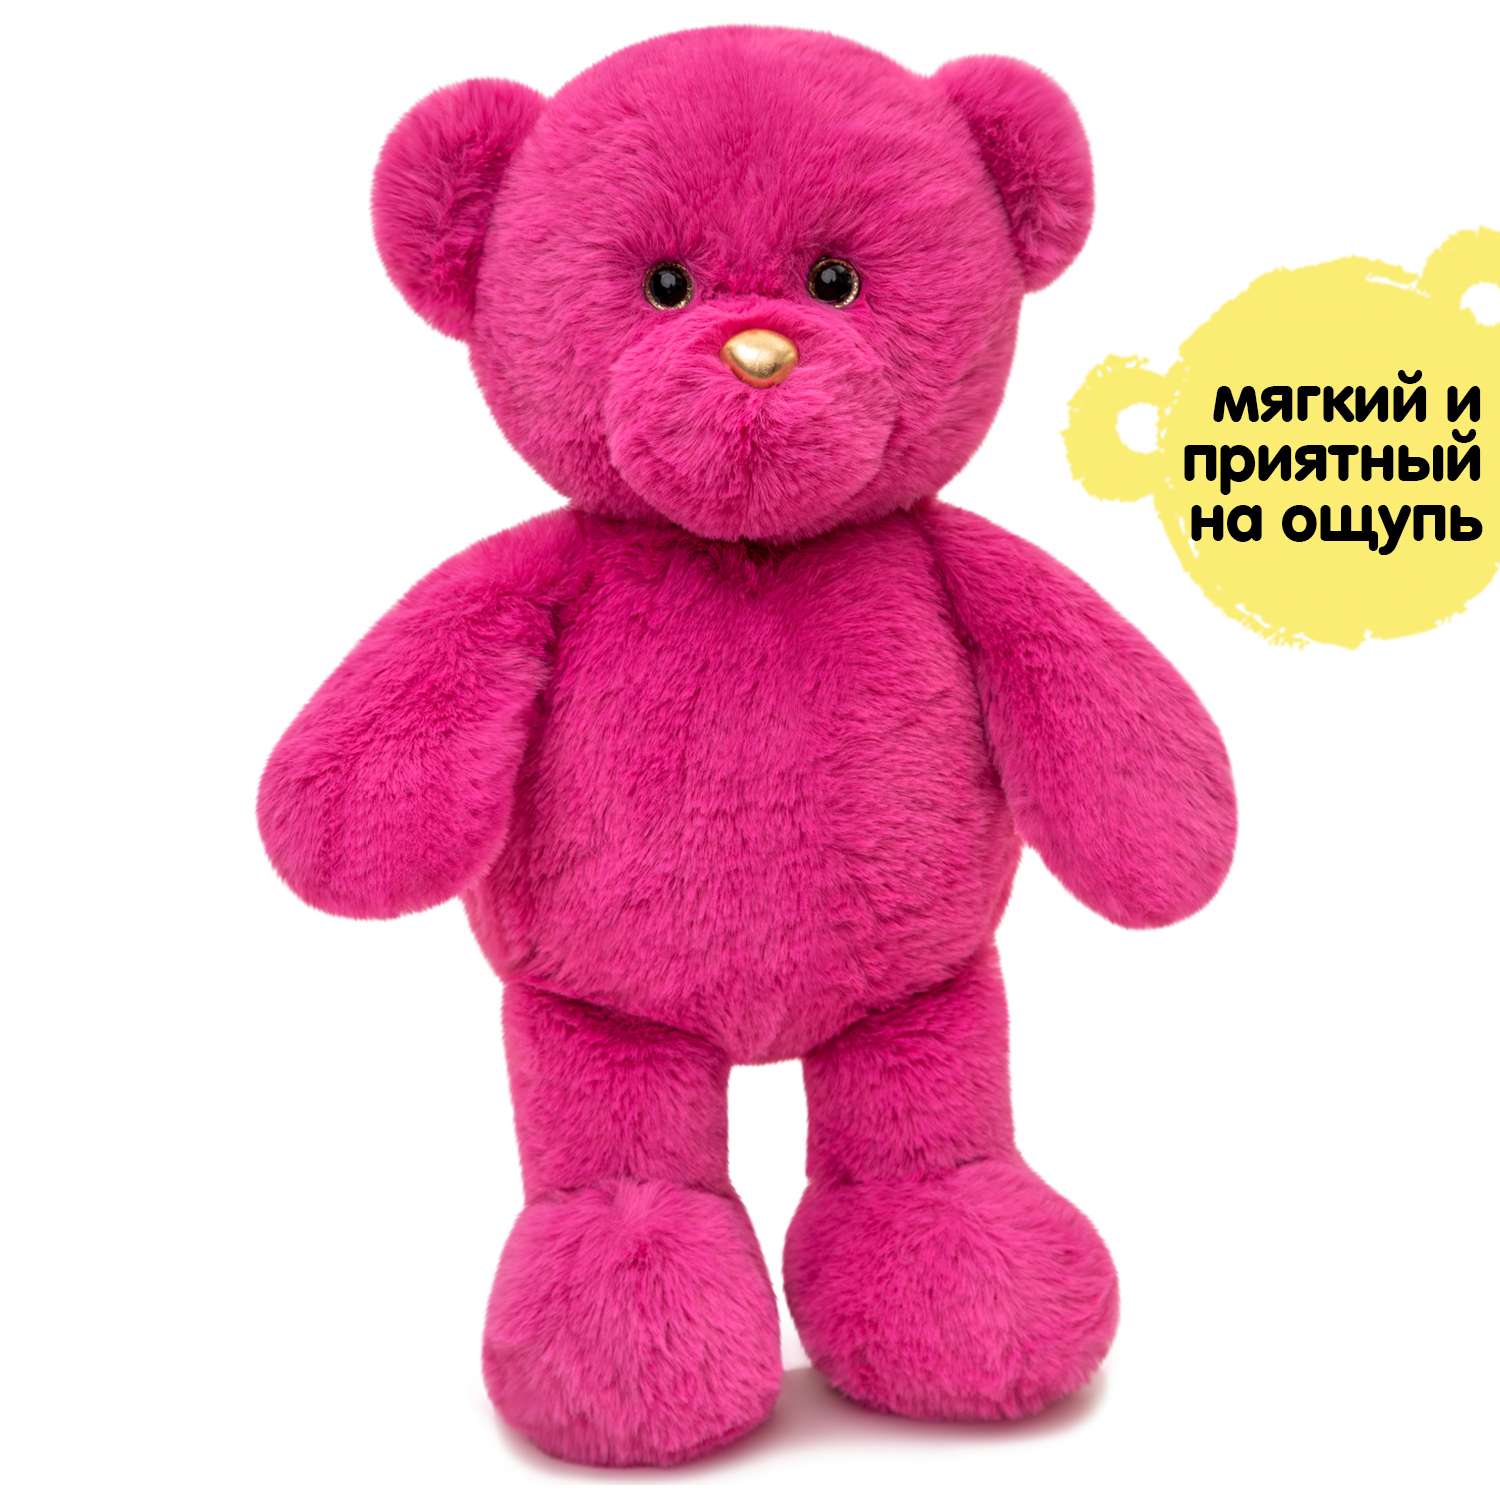 Мягкая игрушка KULT of toys Плюшевый мишка 35 см цвет розовый - фото 1